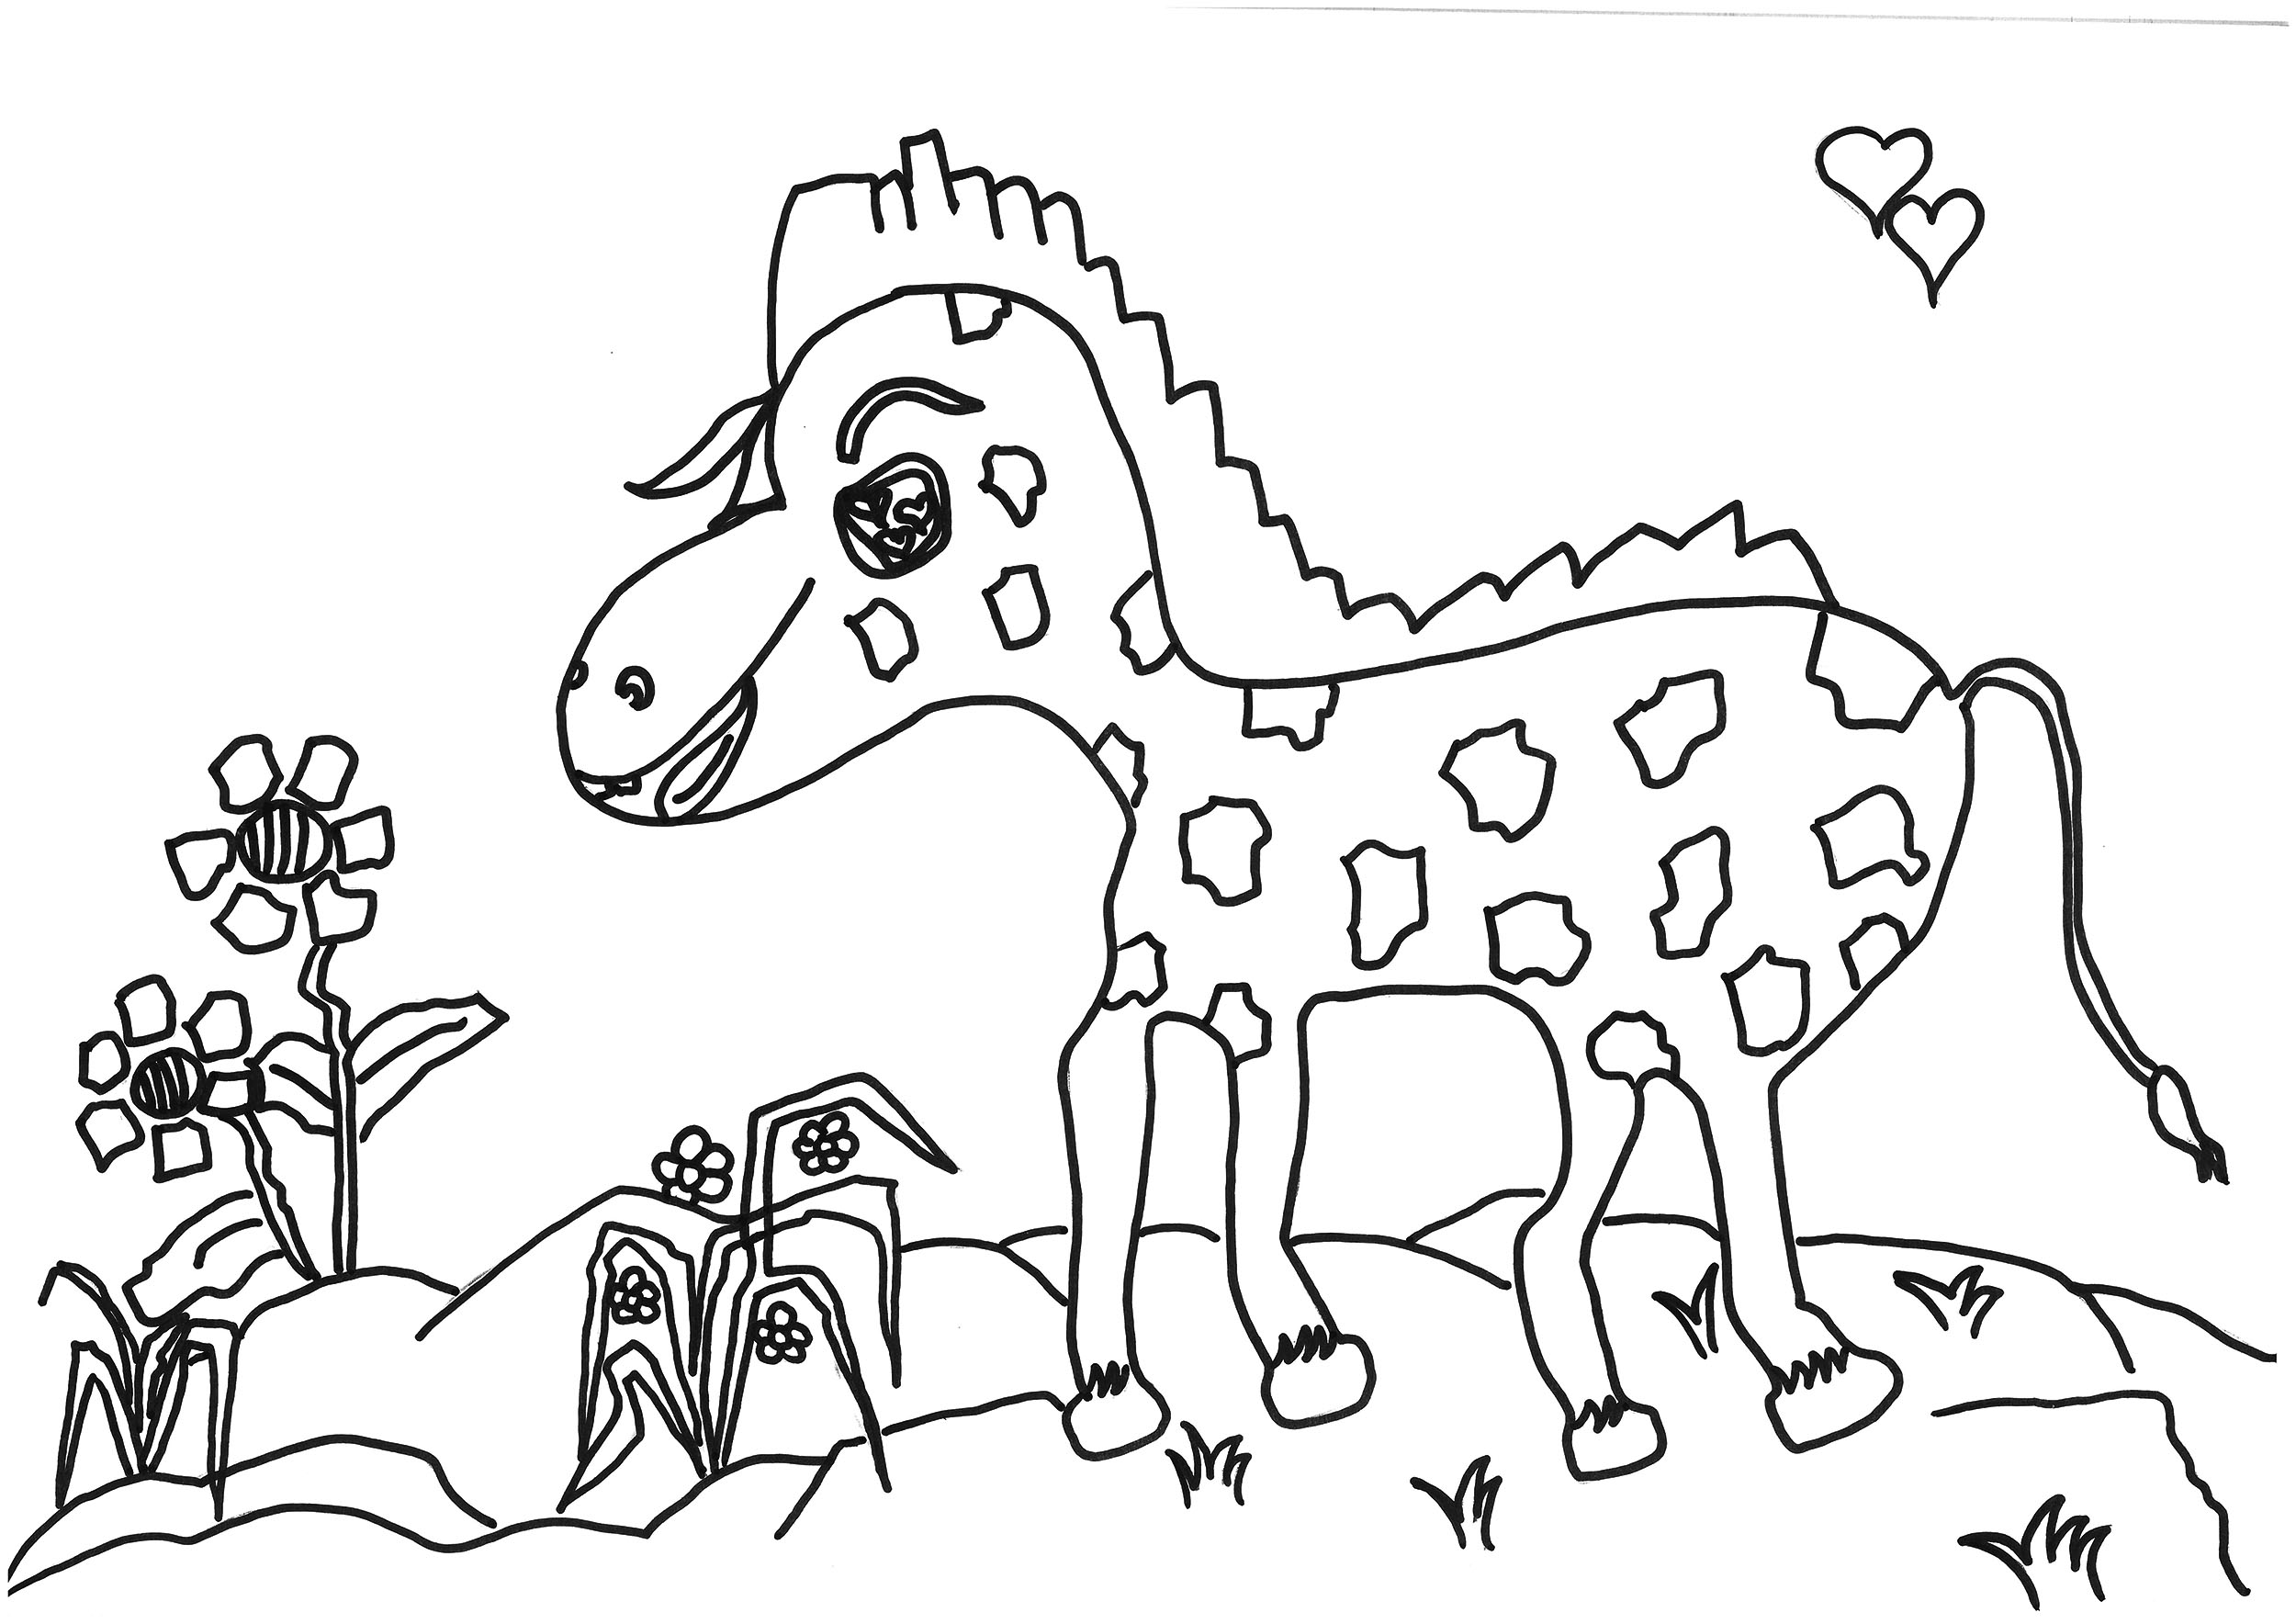 8岁可打印填色画案例 小鹿的故事主题作品大全